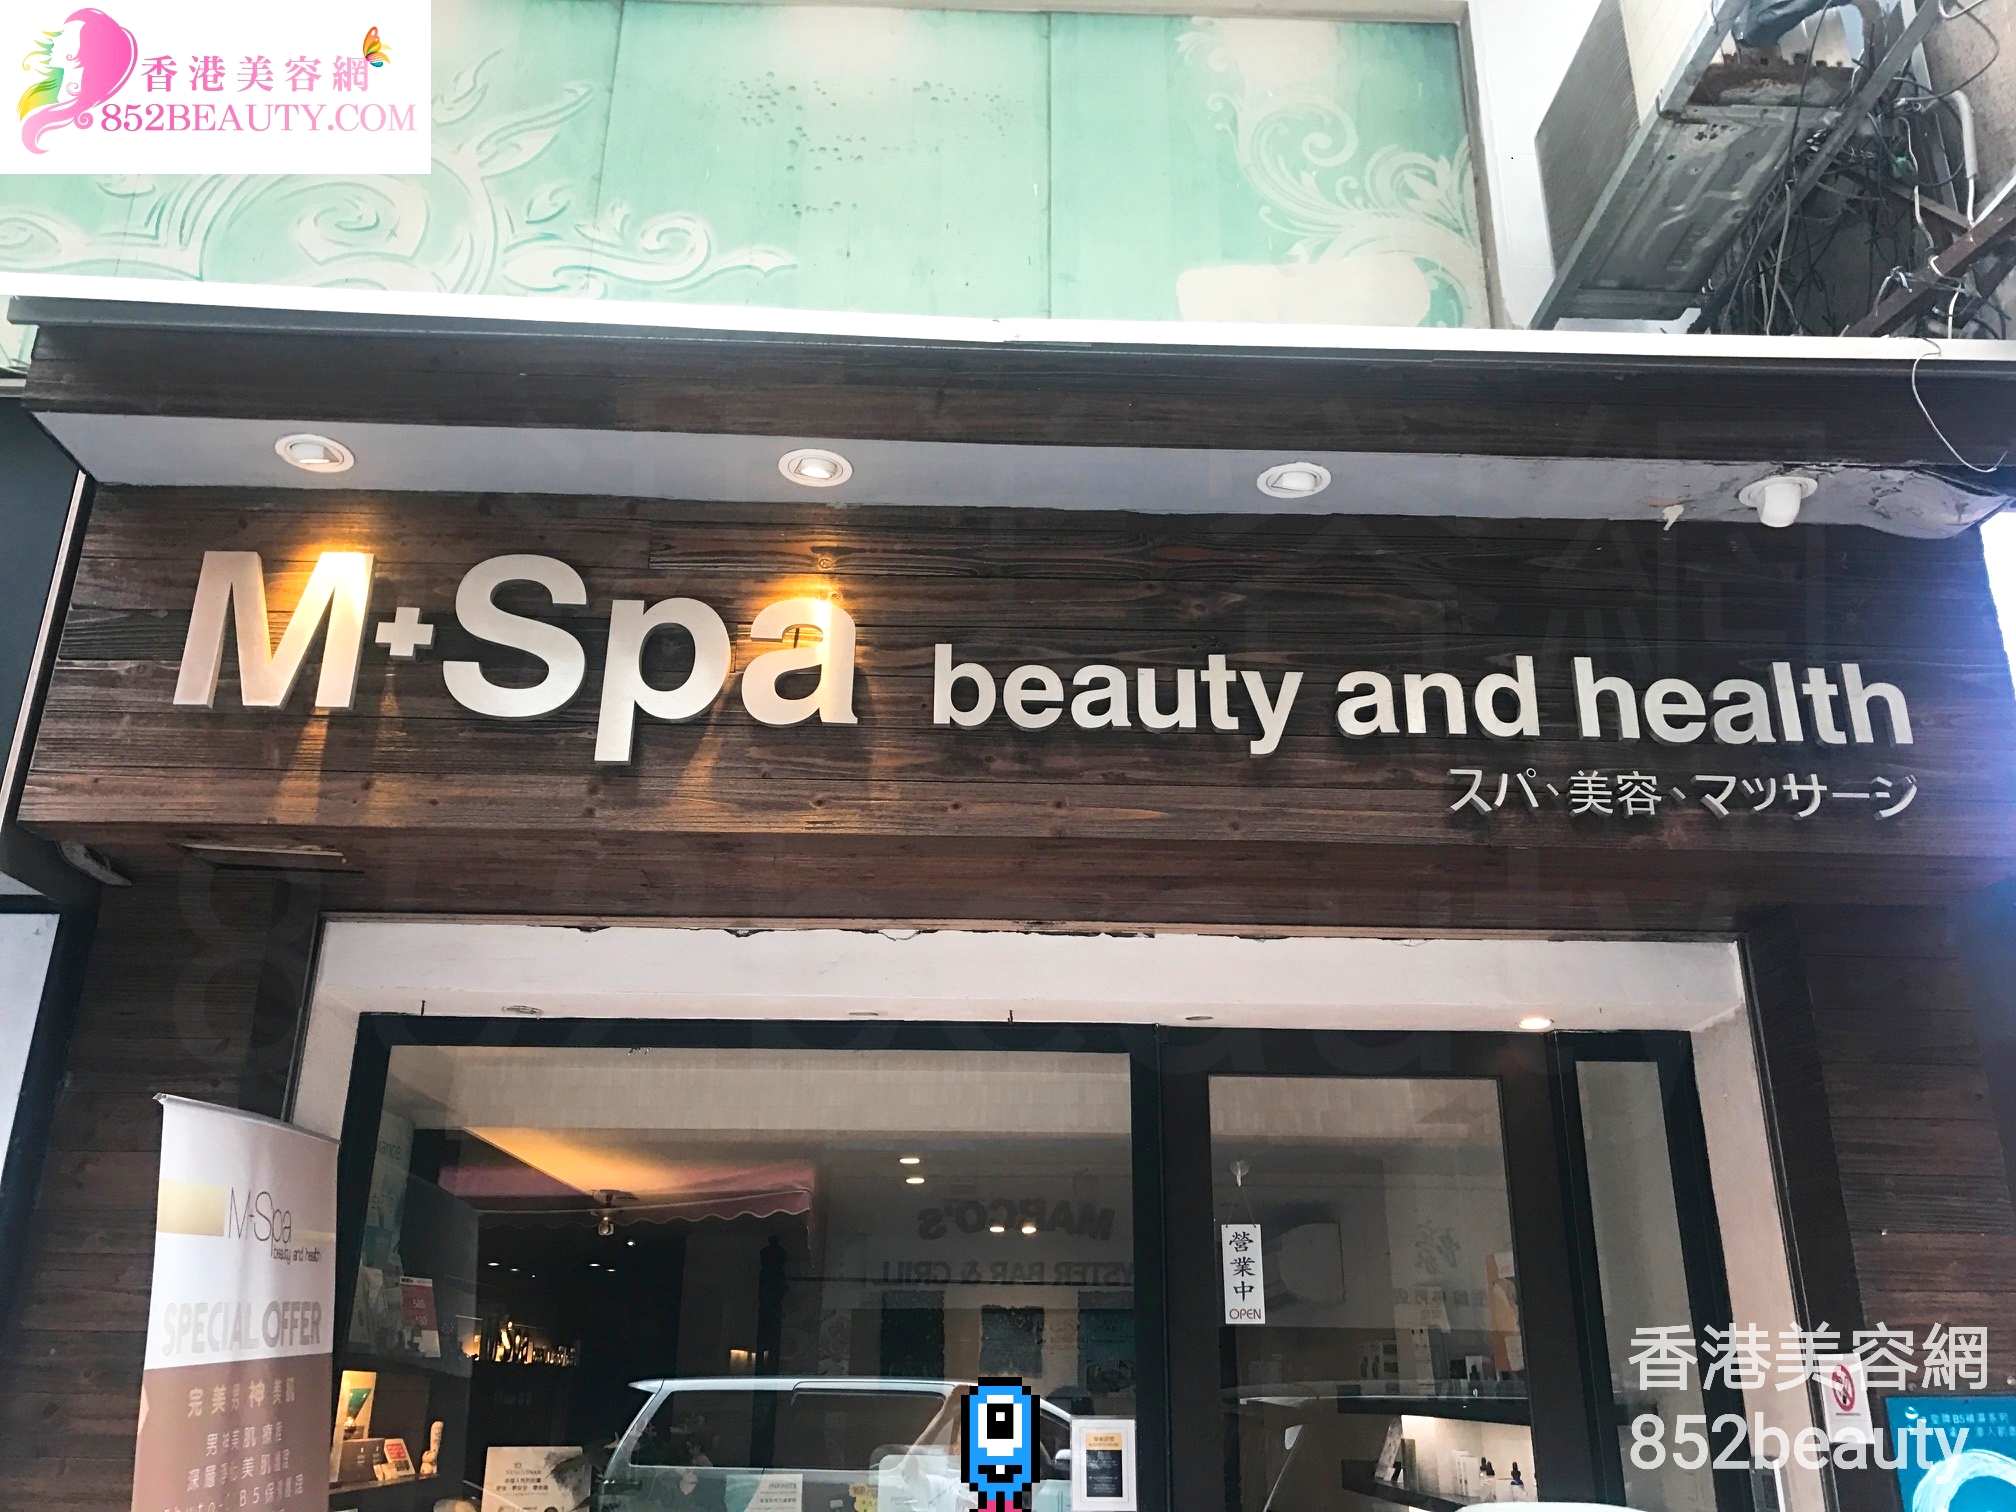 香港美容網 Hong Kong Beauty Salon 美容院 / 美容師: M+Spa beauty and health